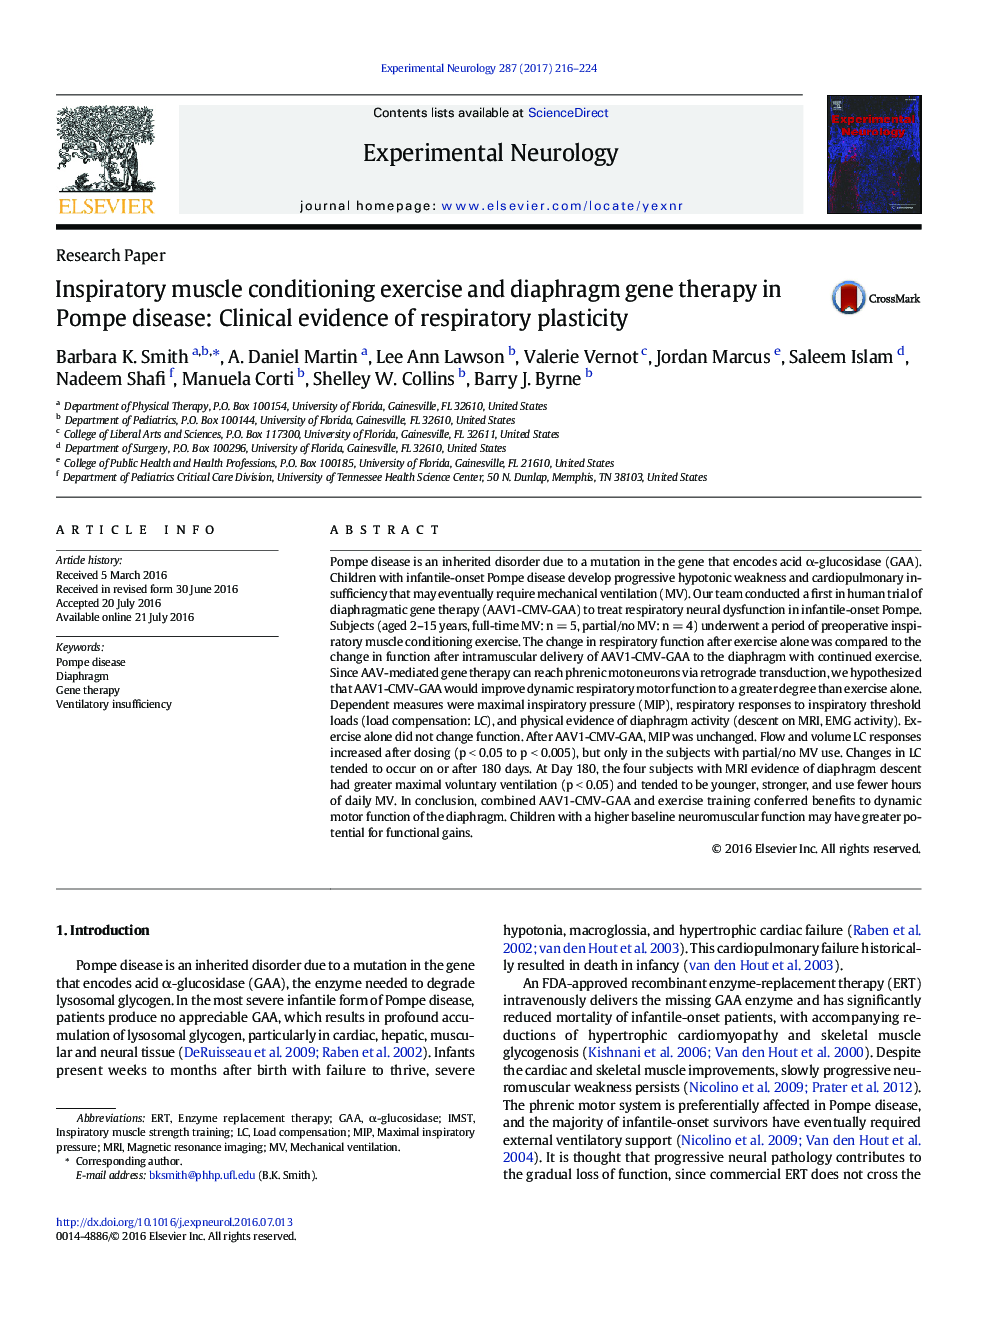 تحقیقات مقاله: تهیه عضله تنفس و تعیین ژن دیافراگم در بیماری پومپ: شواهد بالینی پلاستیک تنفسی 